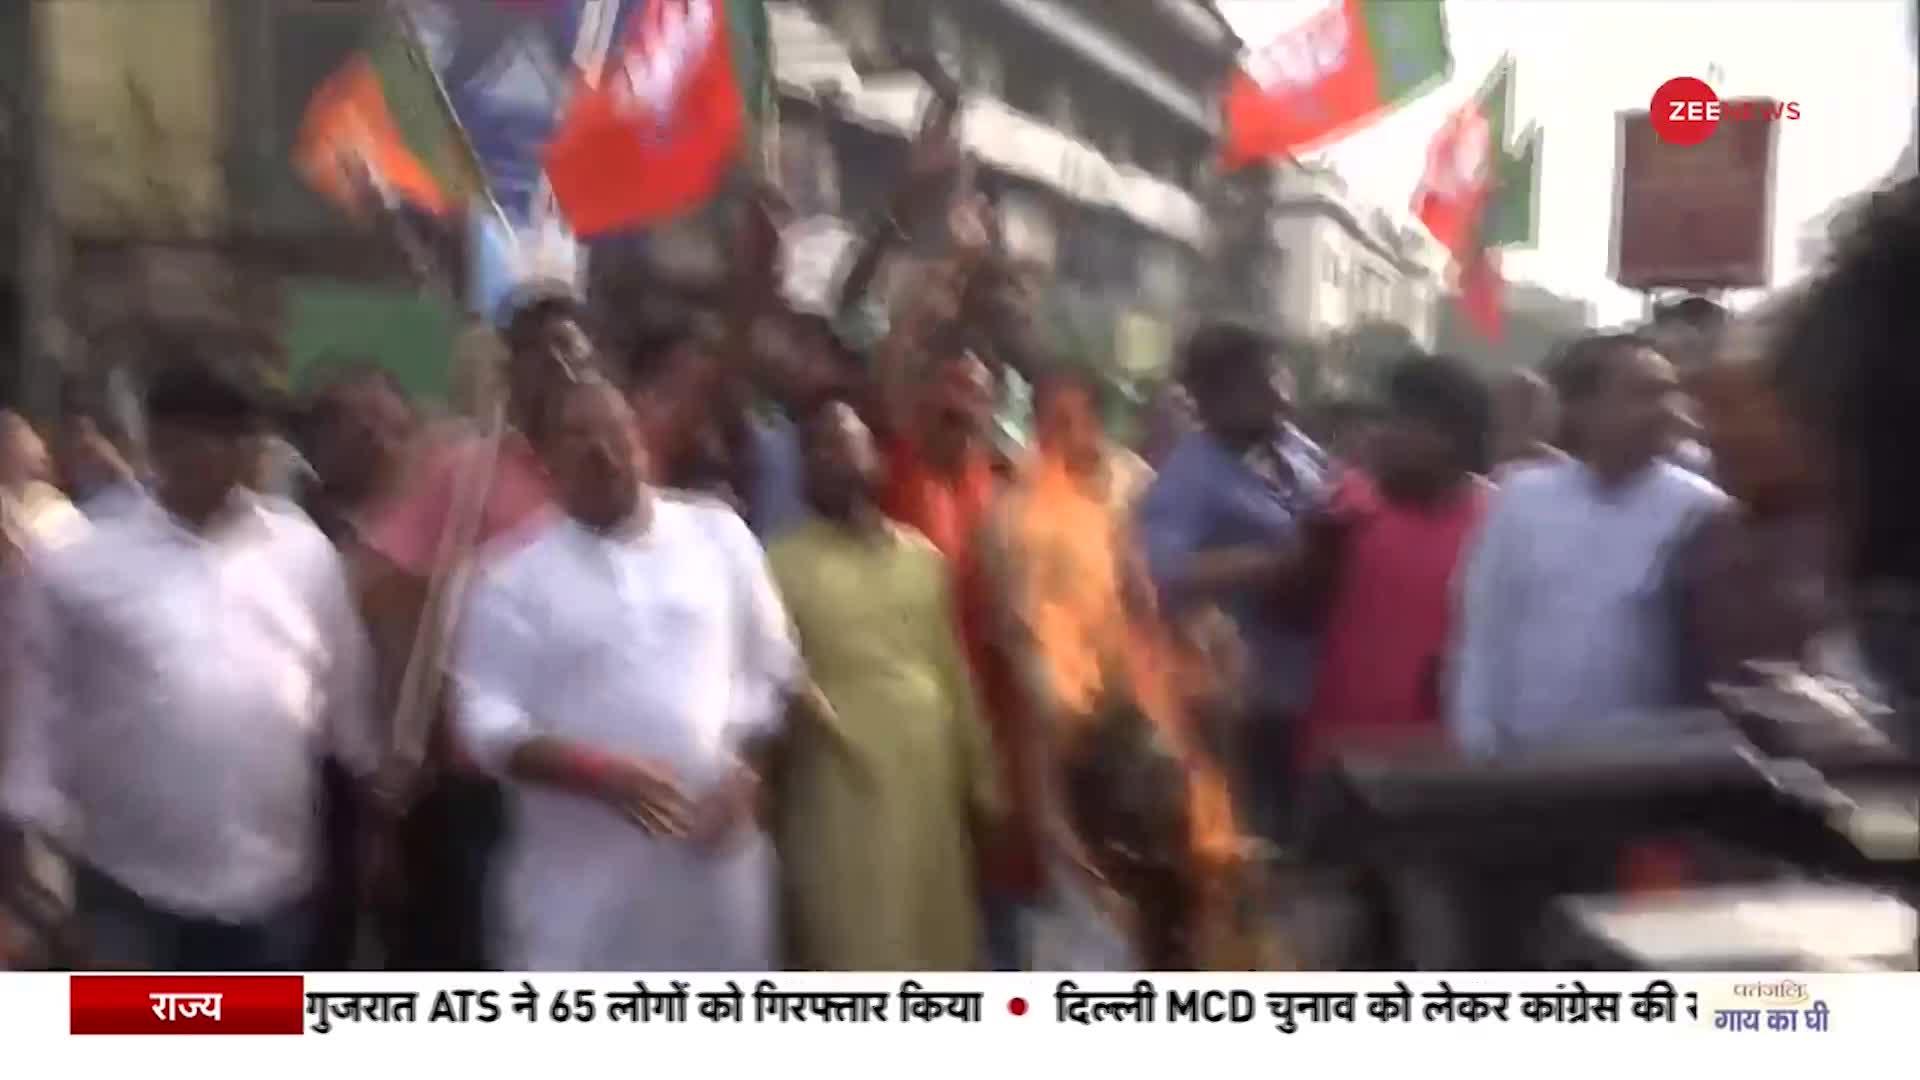 Akhil Giri On Draupadi Murmu: TMC नेता अखिल गिरी के विवादित बयान के खिलाफ विरोध प्रदर्शन